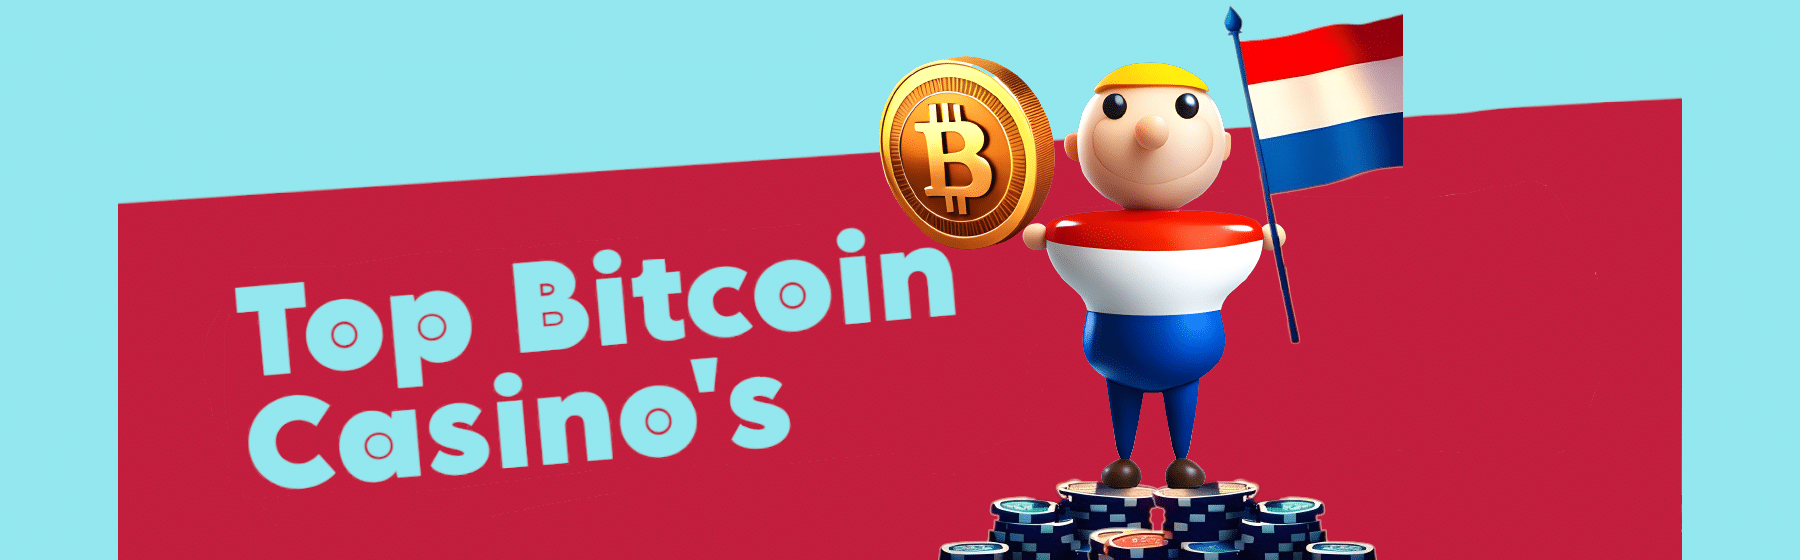 man met een nederlandse vlag in de ene hand en een bitcoin in de andere hand